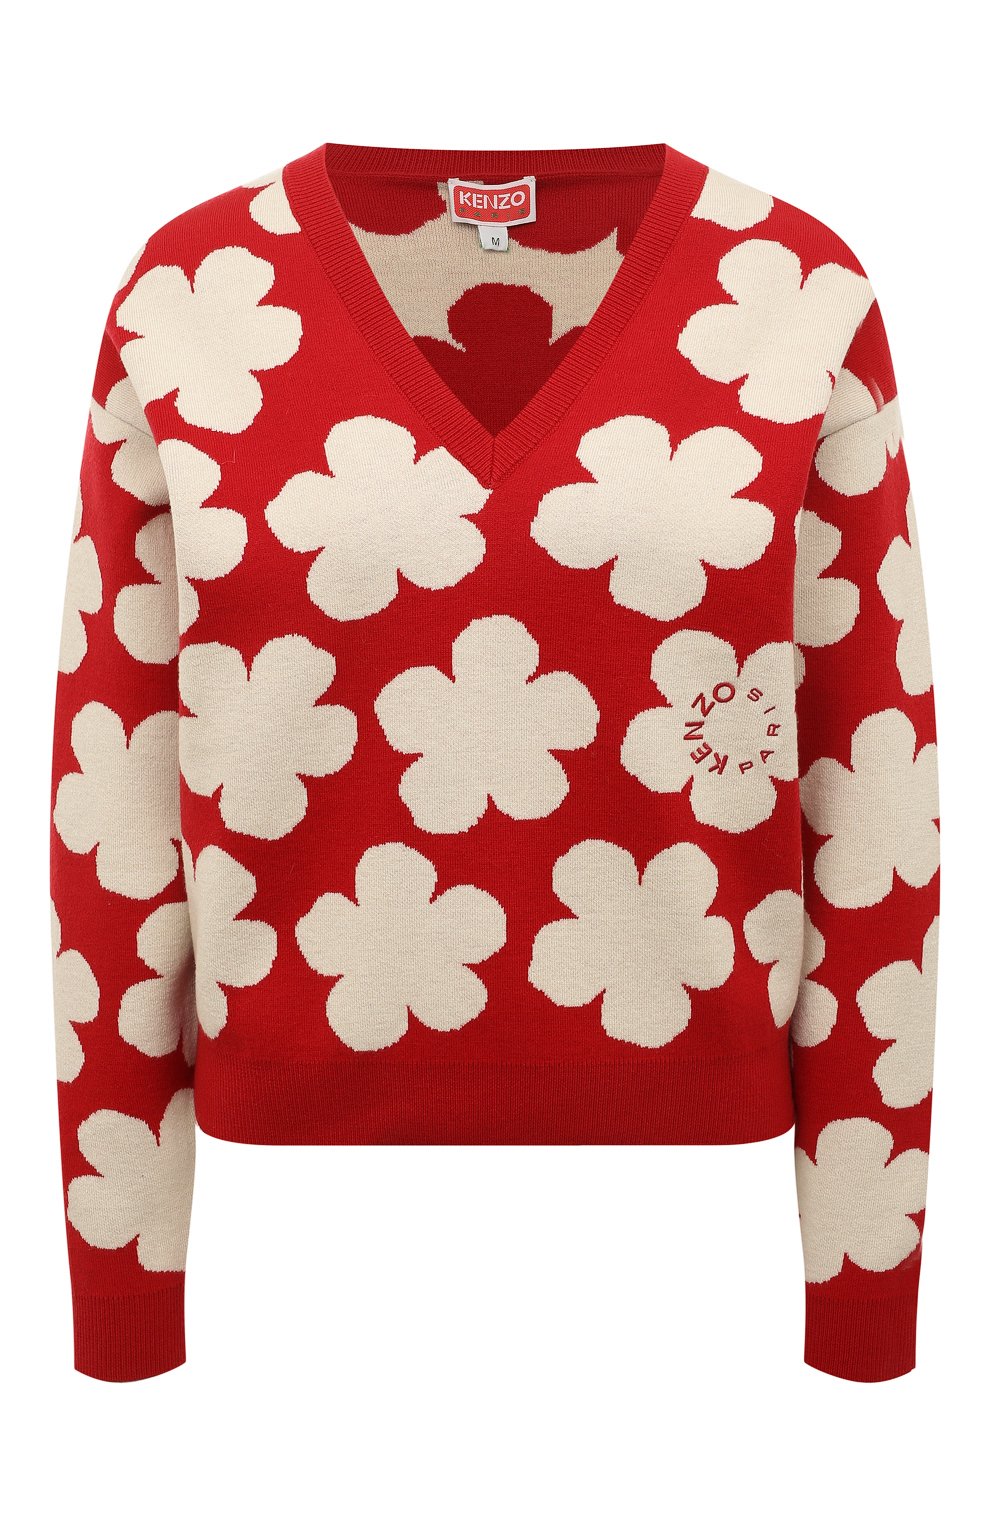 Пуловер из шерсти и хлопка Kenzo FC62PU3263CO/21, цвет красный, размер 46